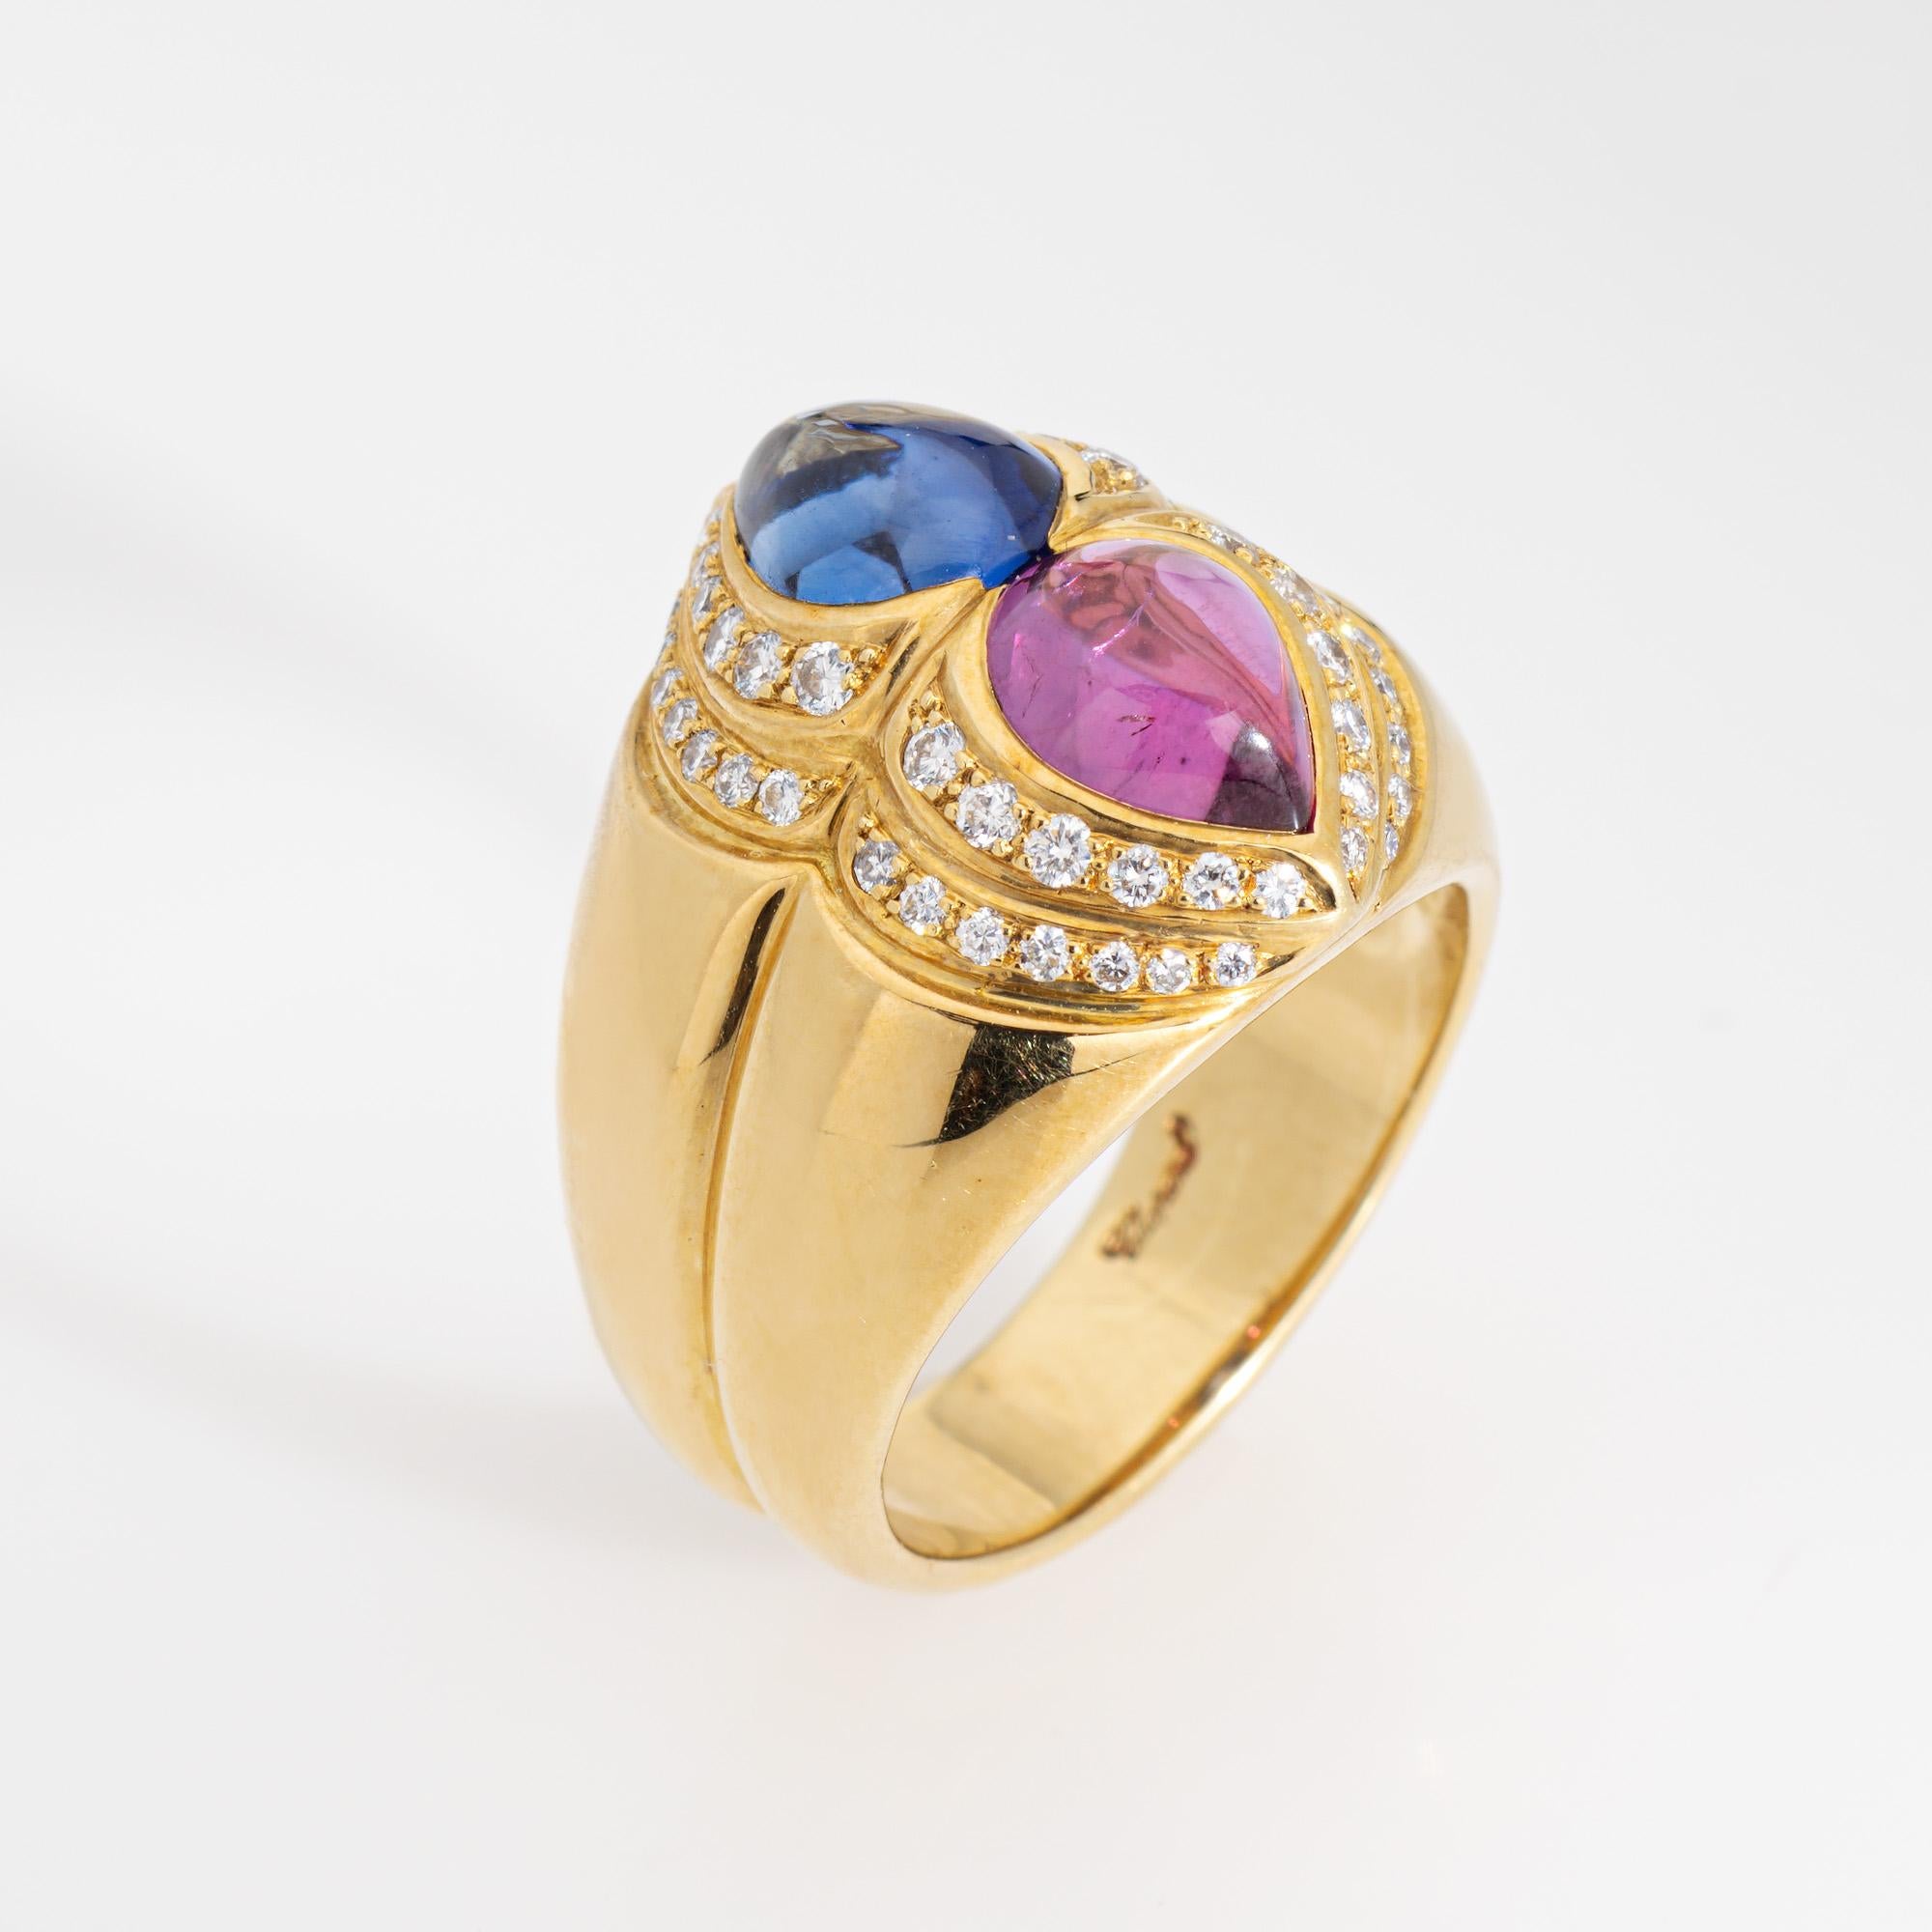 Nachlass Chopard rosa & blauen Saphir Ring in 18 Karat Gelbgold gefertigt.  

Rosa und blaue Saphire im Cabochon-Schliff messen 7,5 x 5,5 mm. Die Diamanten haben insgesamt schätzungsweise 0,25 Karat (geschätzte Farbe G-H und Reinheit VS2-SI1). Die